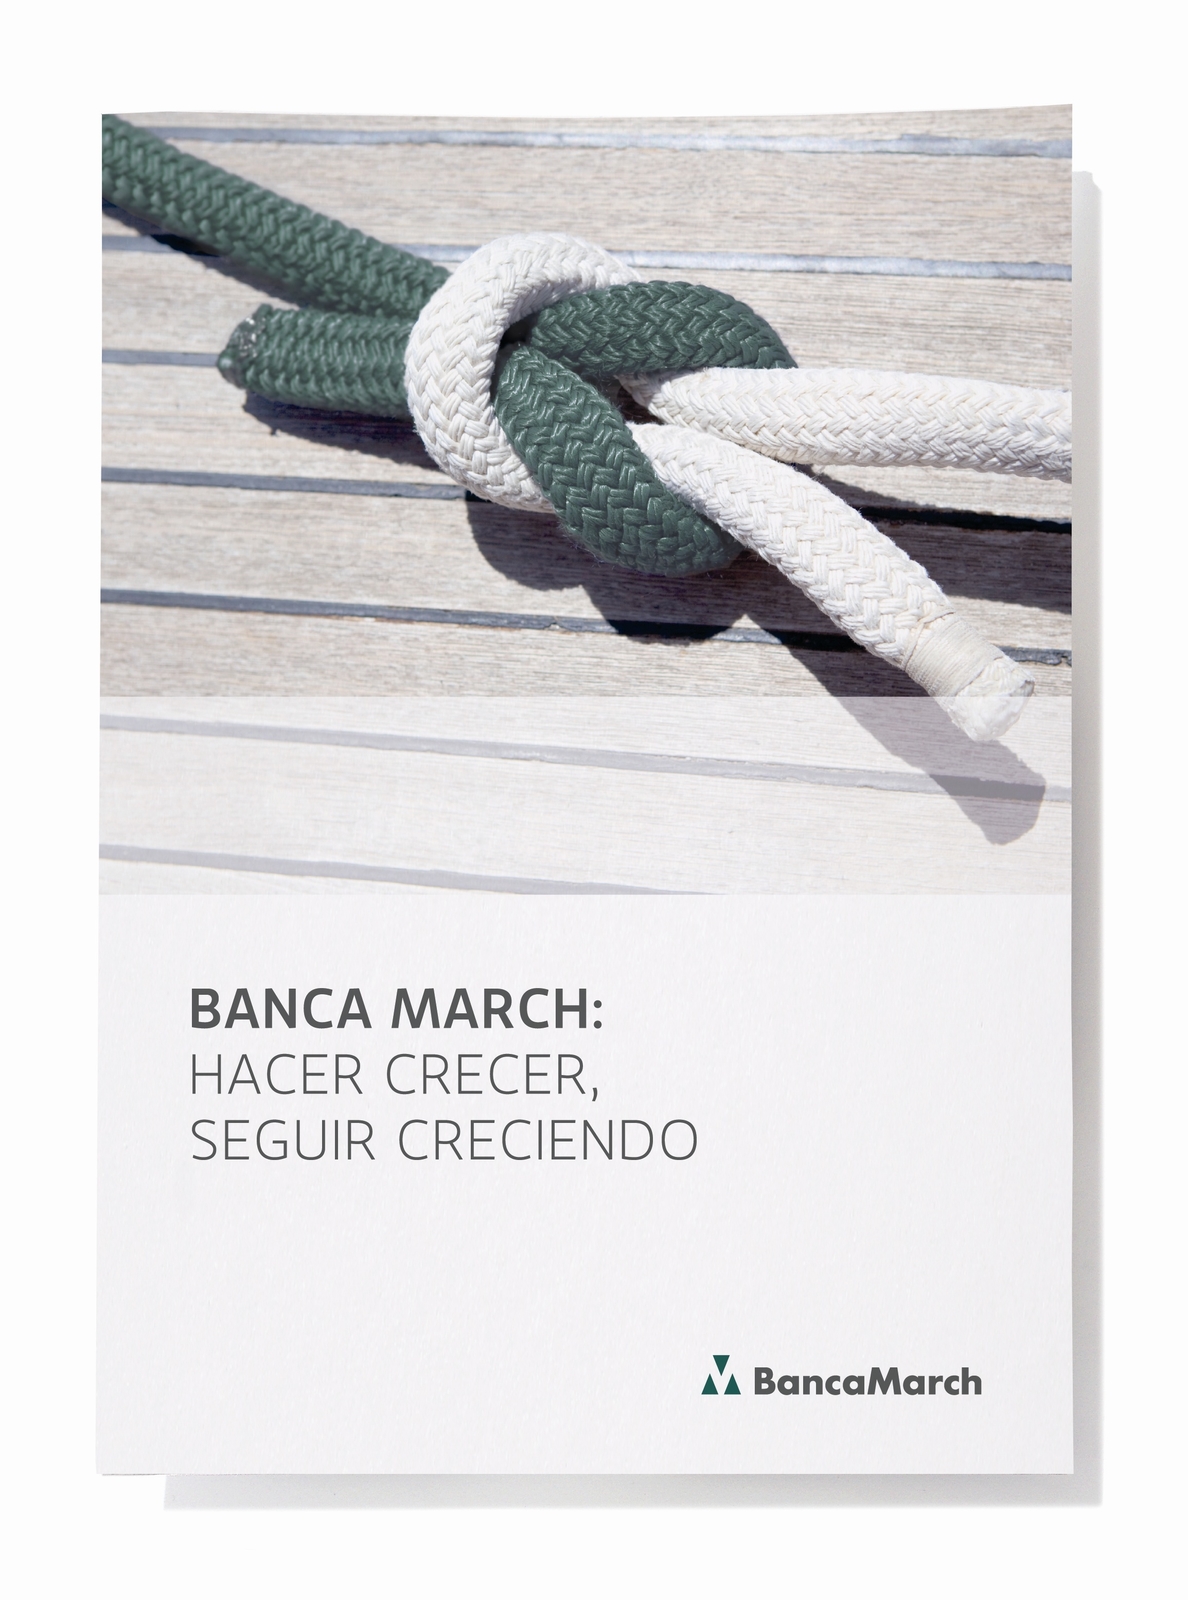 Banca March renueva su marca apostando por «el crecimiento conjunto de clientes, empleados y accionistas»